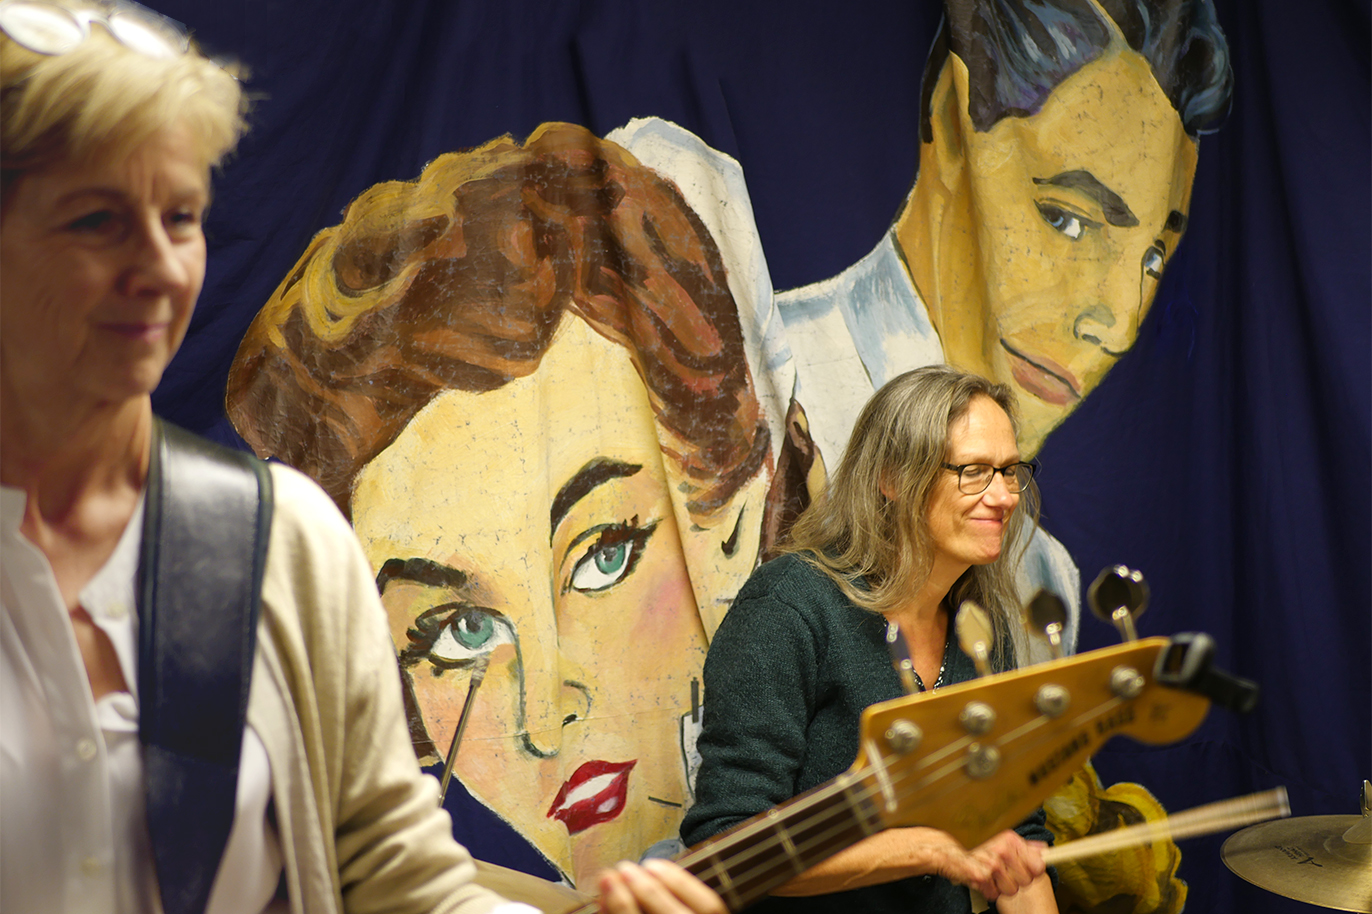 Eva Grund med långt hår och glasögon spelar trummor. Lena Andersson med kort ljust hår spelar bas. Båda mot en blå bakgrund.